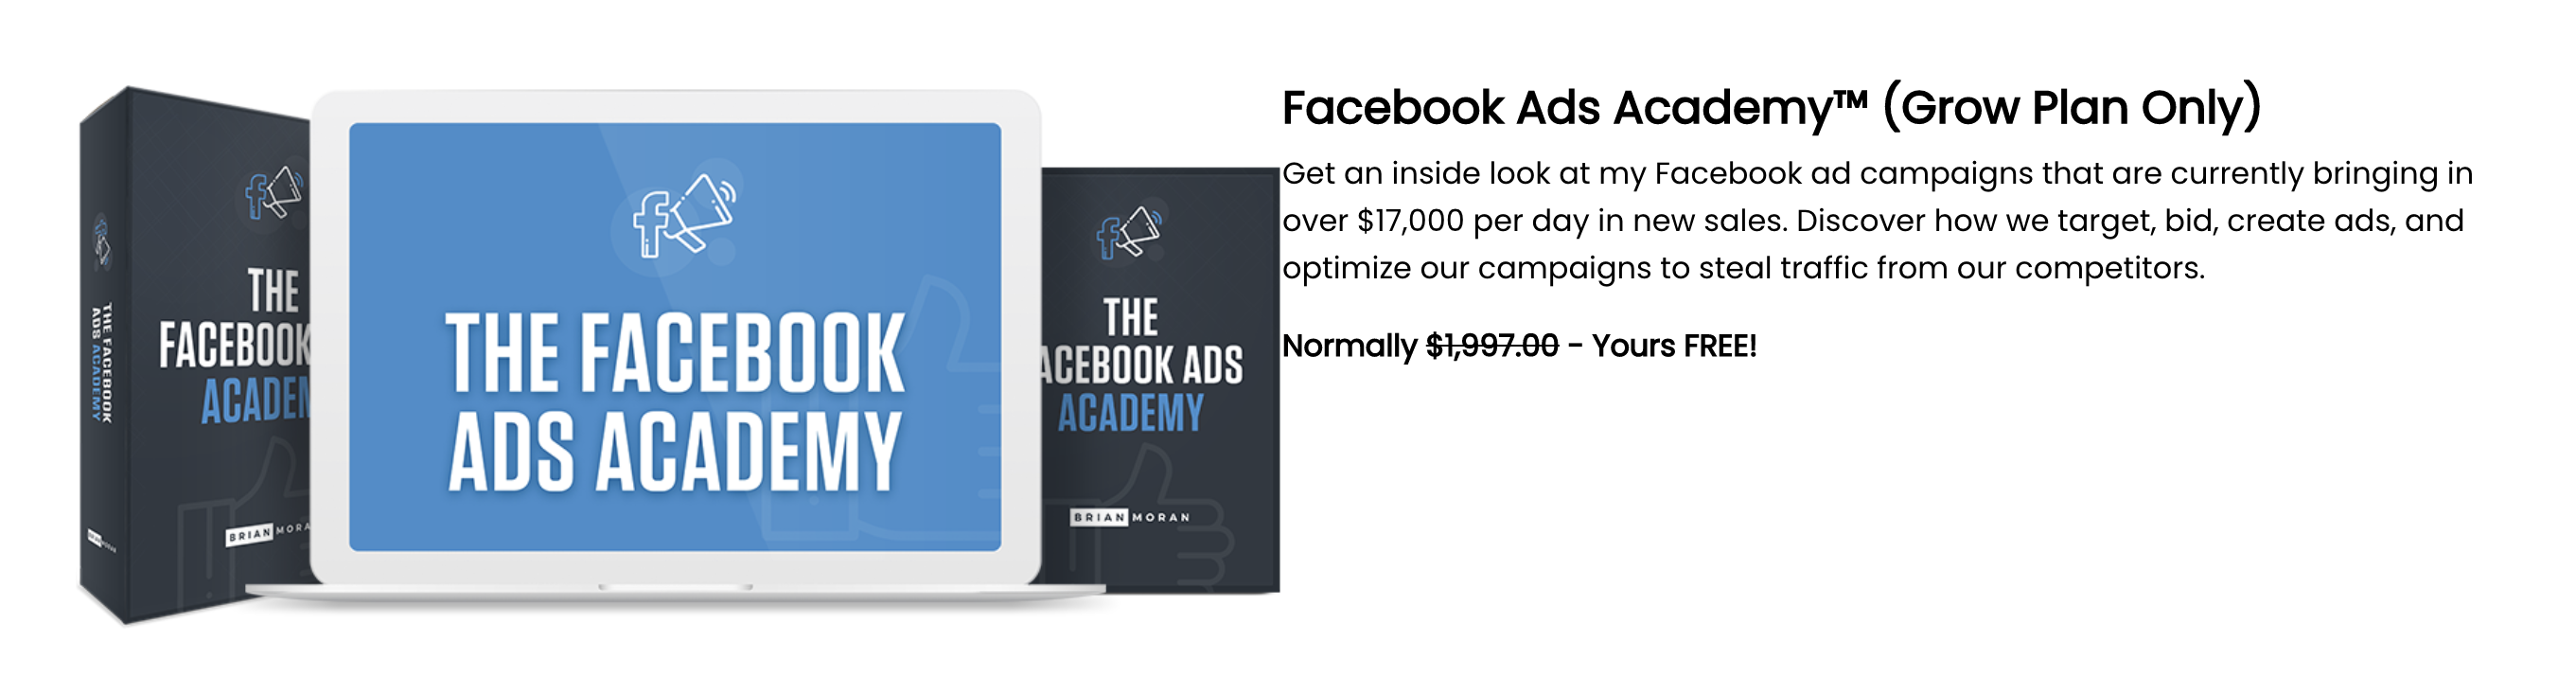 Facebook Ads Academy Samcart Bonus